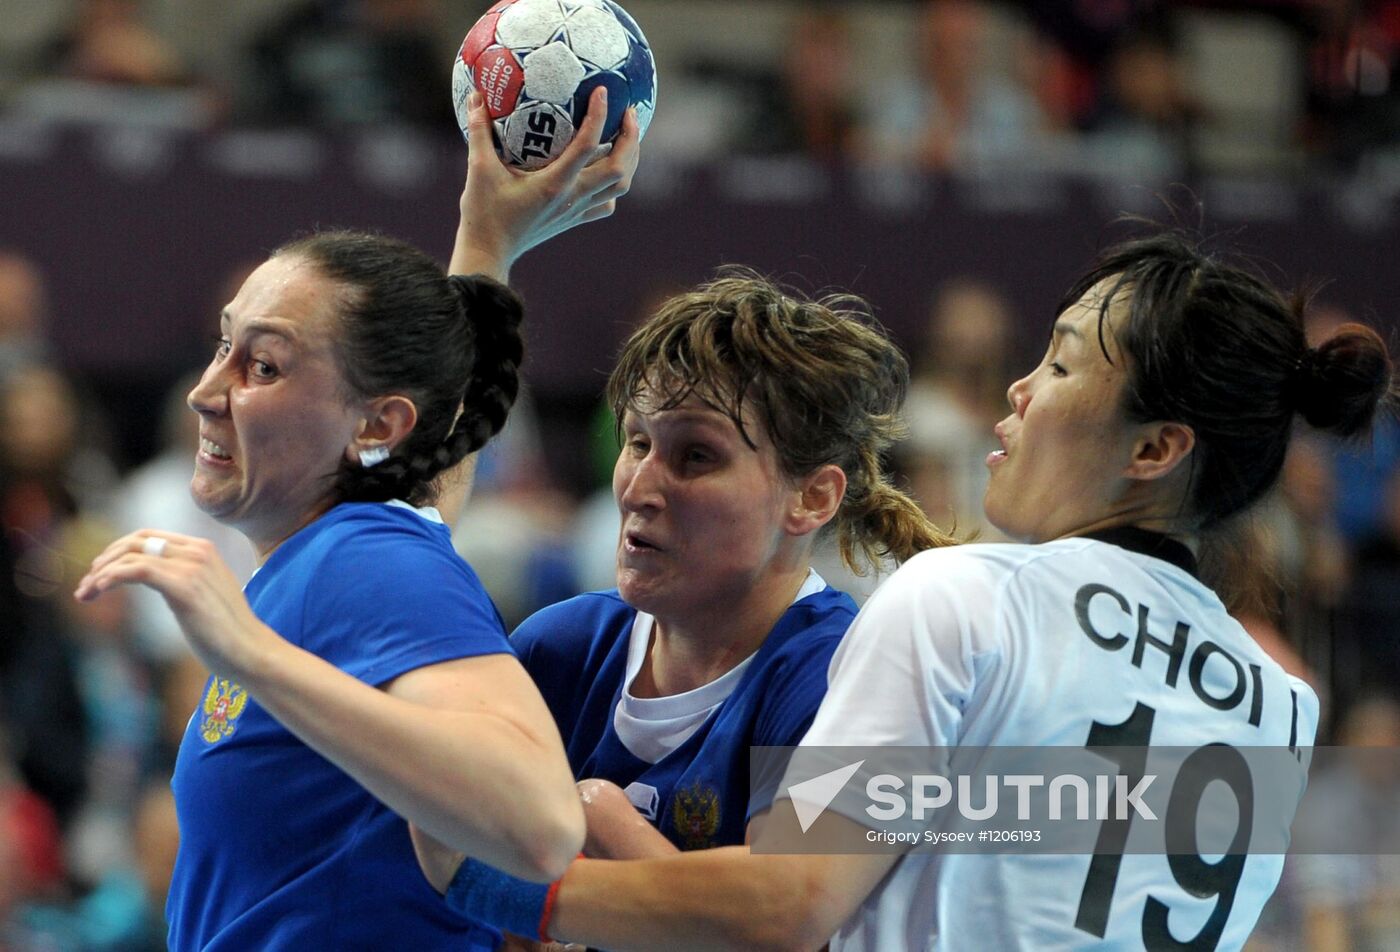 Olympics 2012 Women's Handball. Russia vs. South Korea